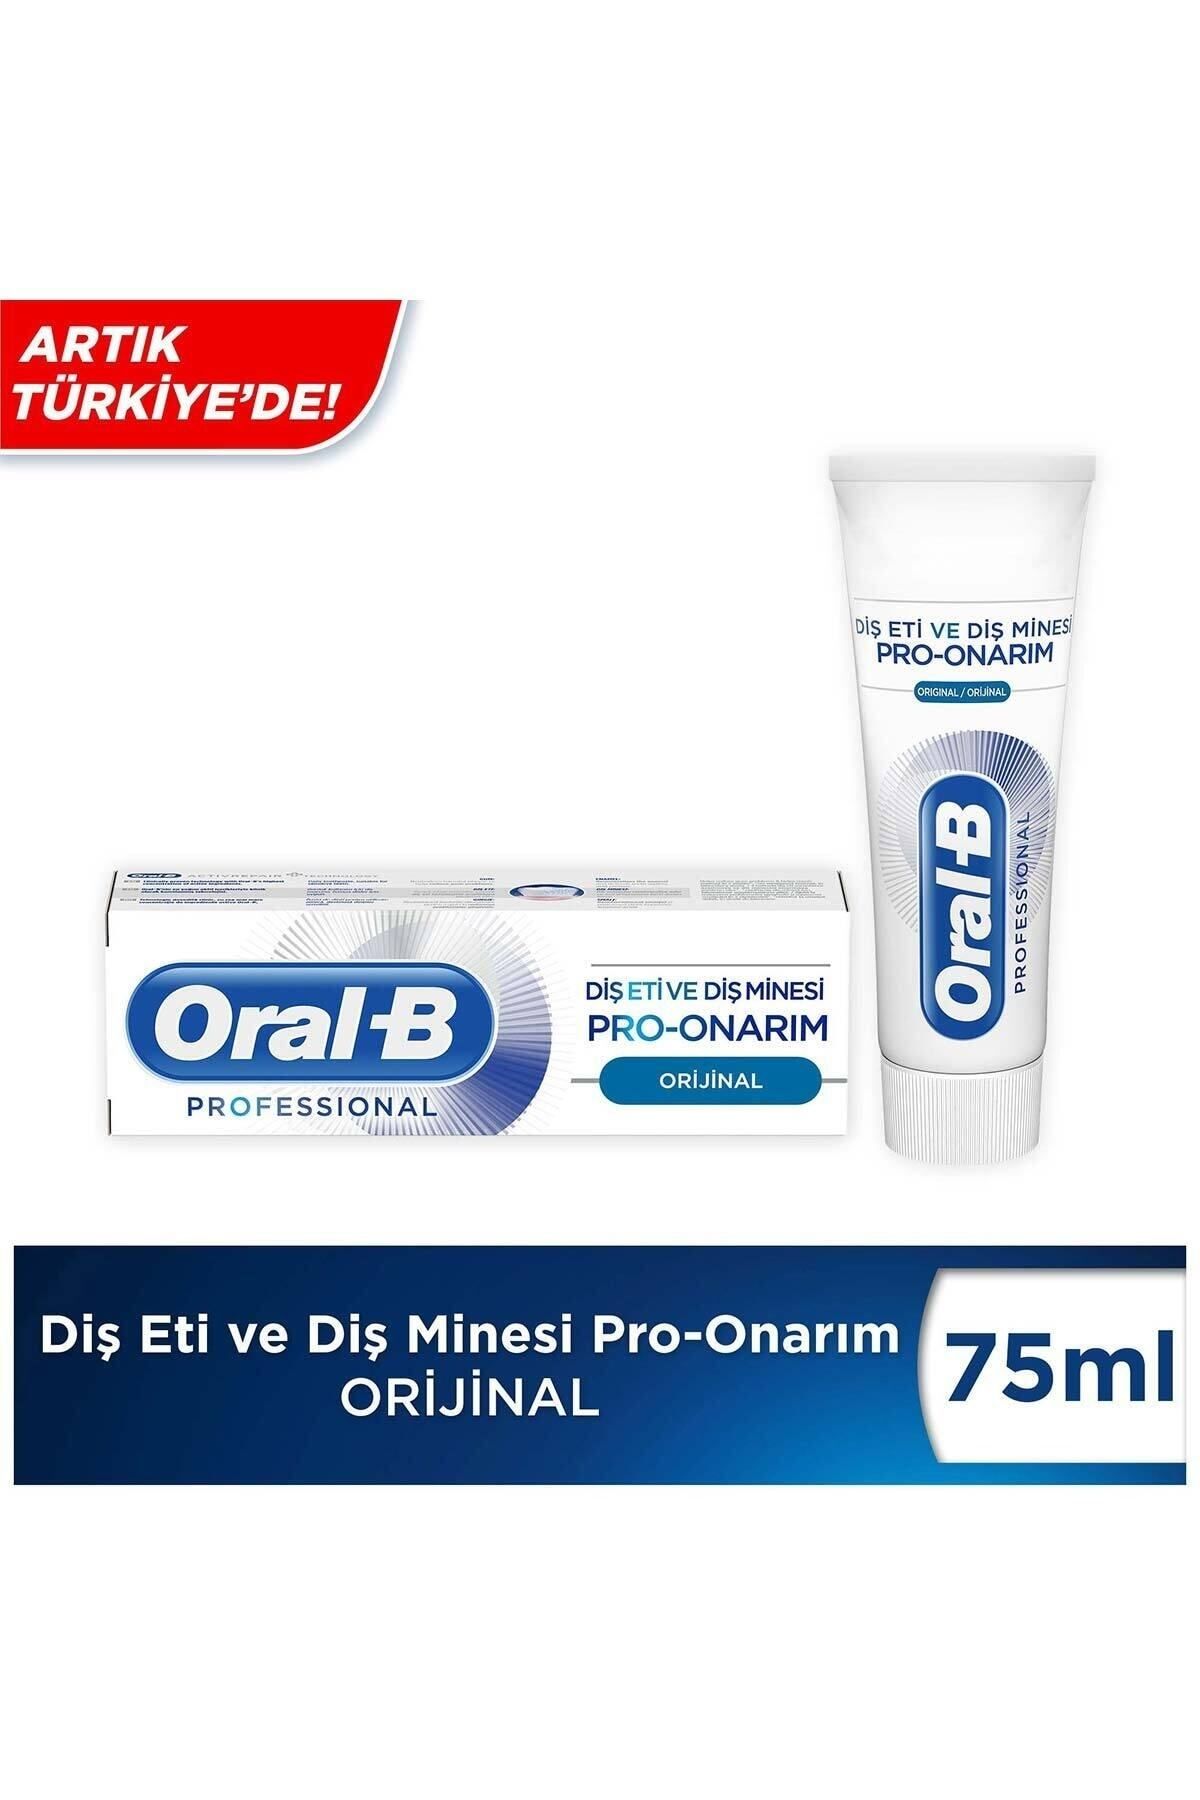 Oral-B Professional Diş Eti Ve Diş Minesi Pro Onarım Orijinal Diş Macunu 75 ml